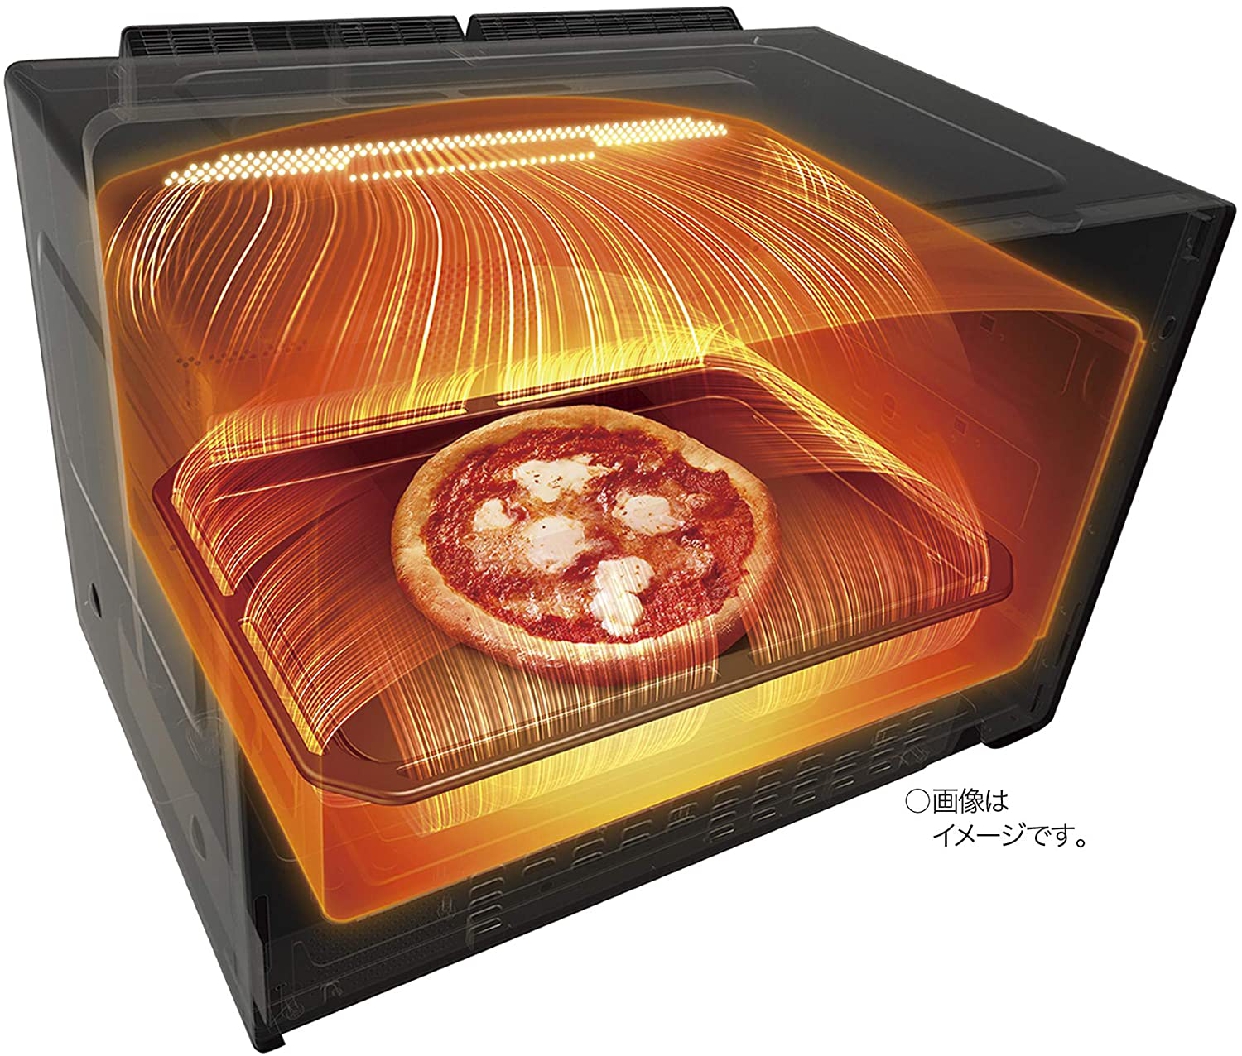 東芝(TOSHIBA) 過熱水蒸気オーブンレンジ ER-TD7000の商品画像4 